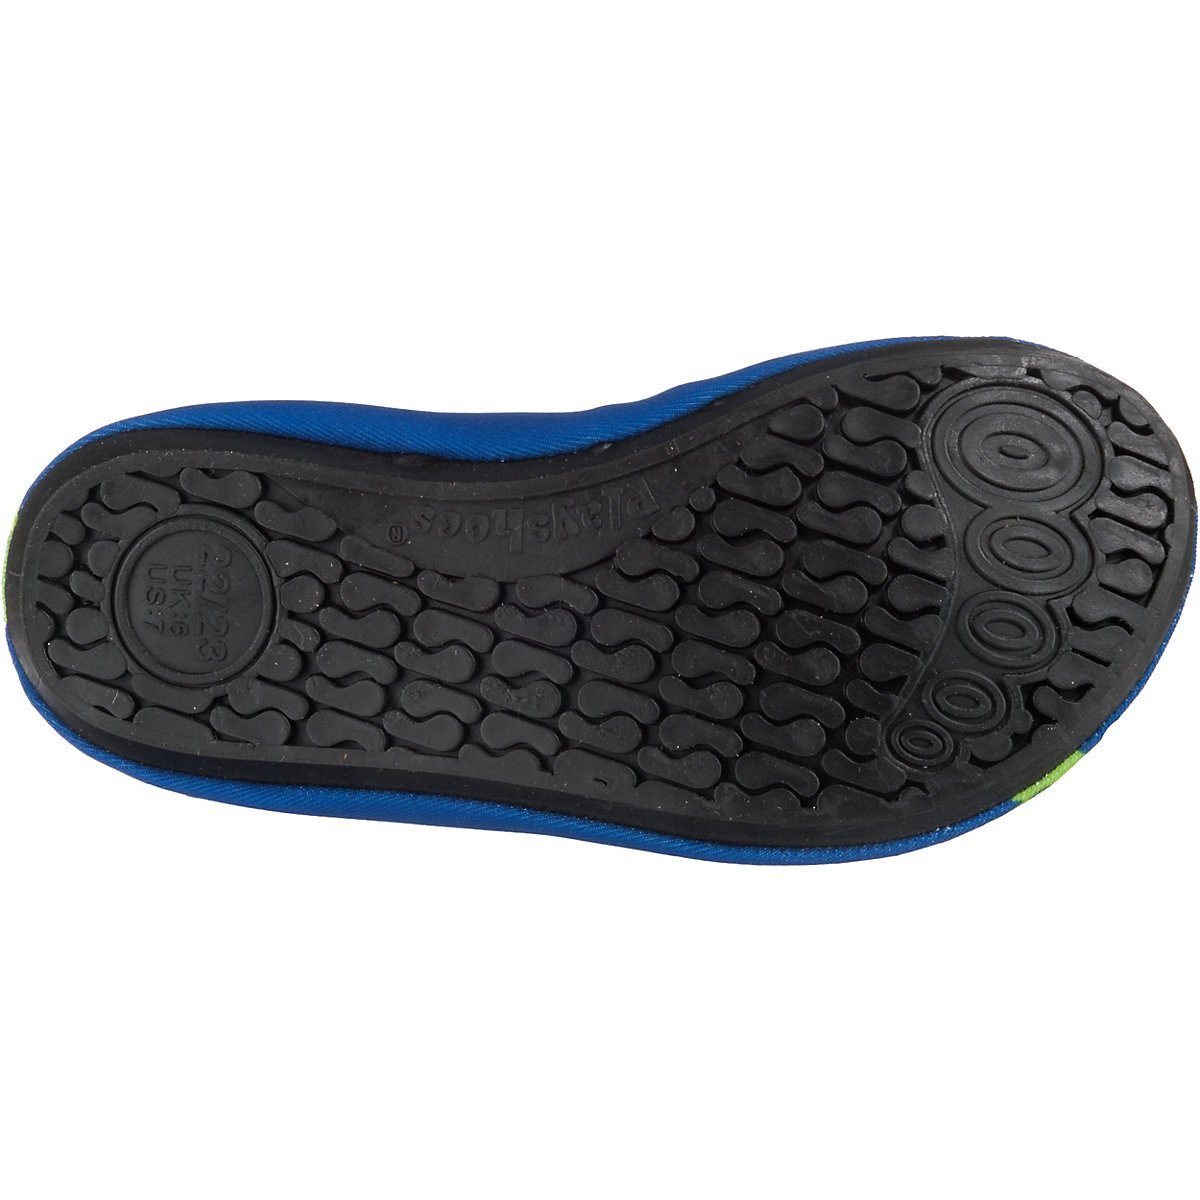 Motiv flexible Wasserschuhe Playshoes Krodkodil-blau Badeschuh Sohle Badeschuhe Passform, Barfuß-Schuh rutschhemmender Schwimmschuhe, mit